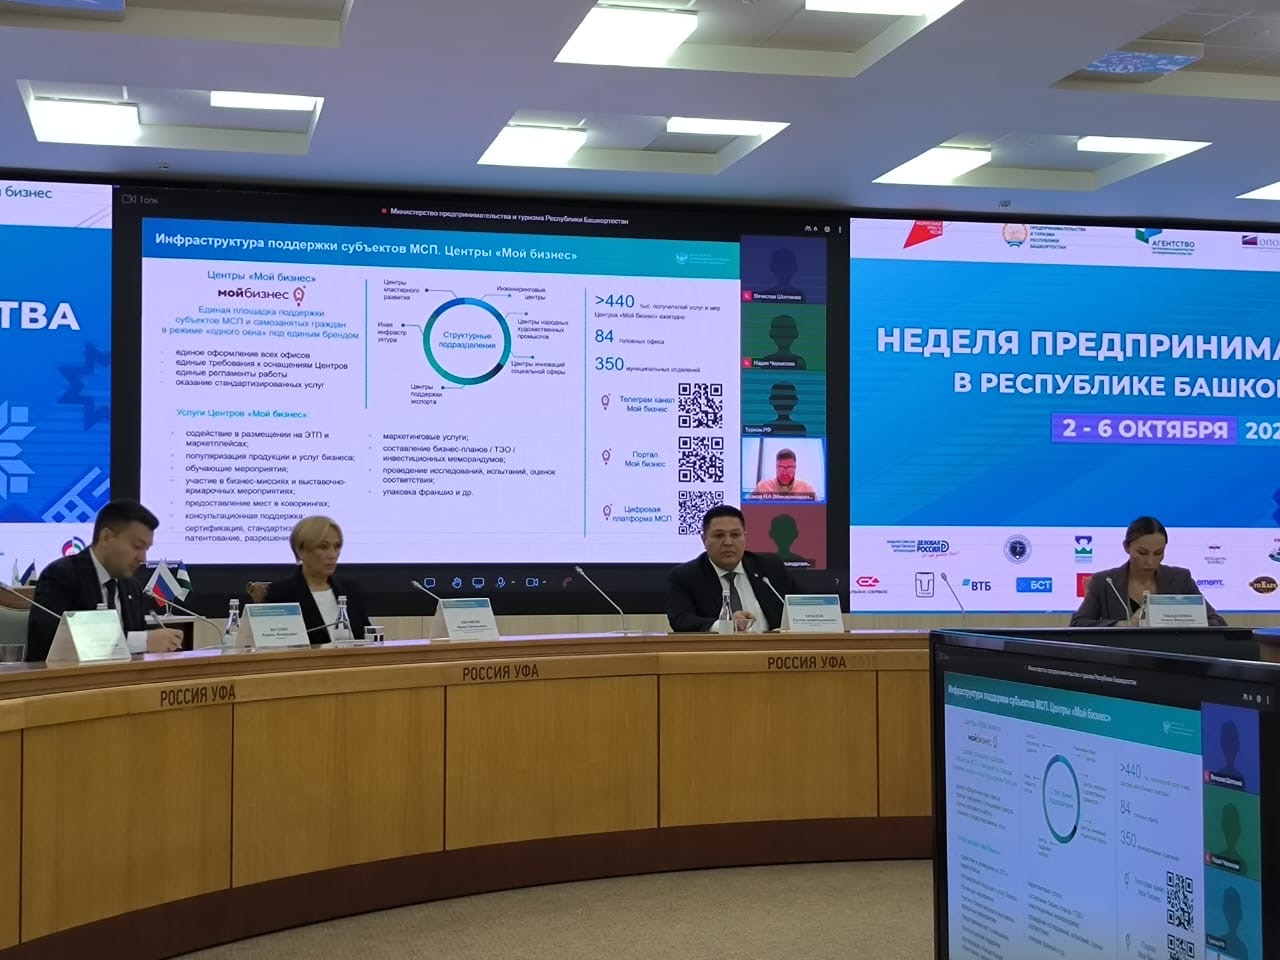 Неделя предпринимательства в Республике Башкортостана завершилась итоговым пленарным заседанием